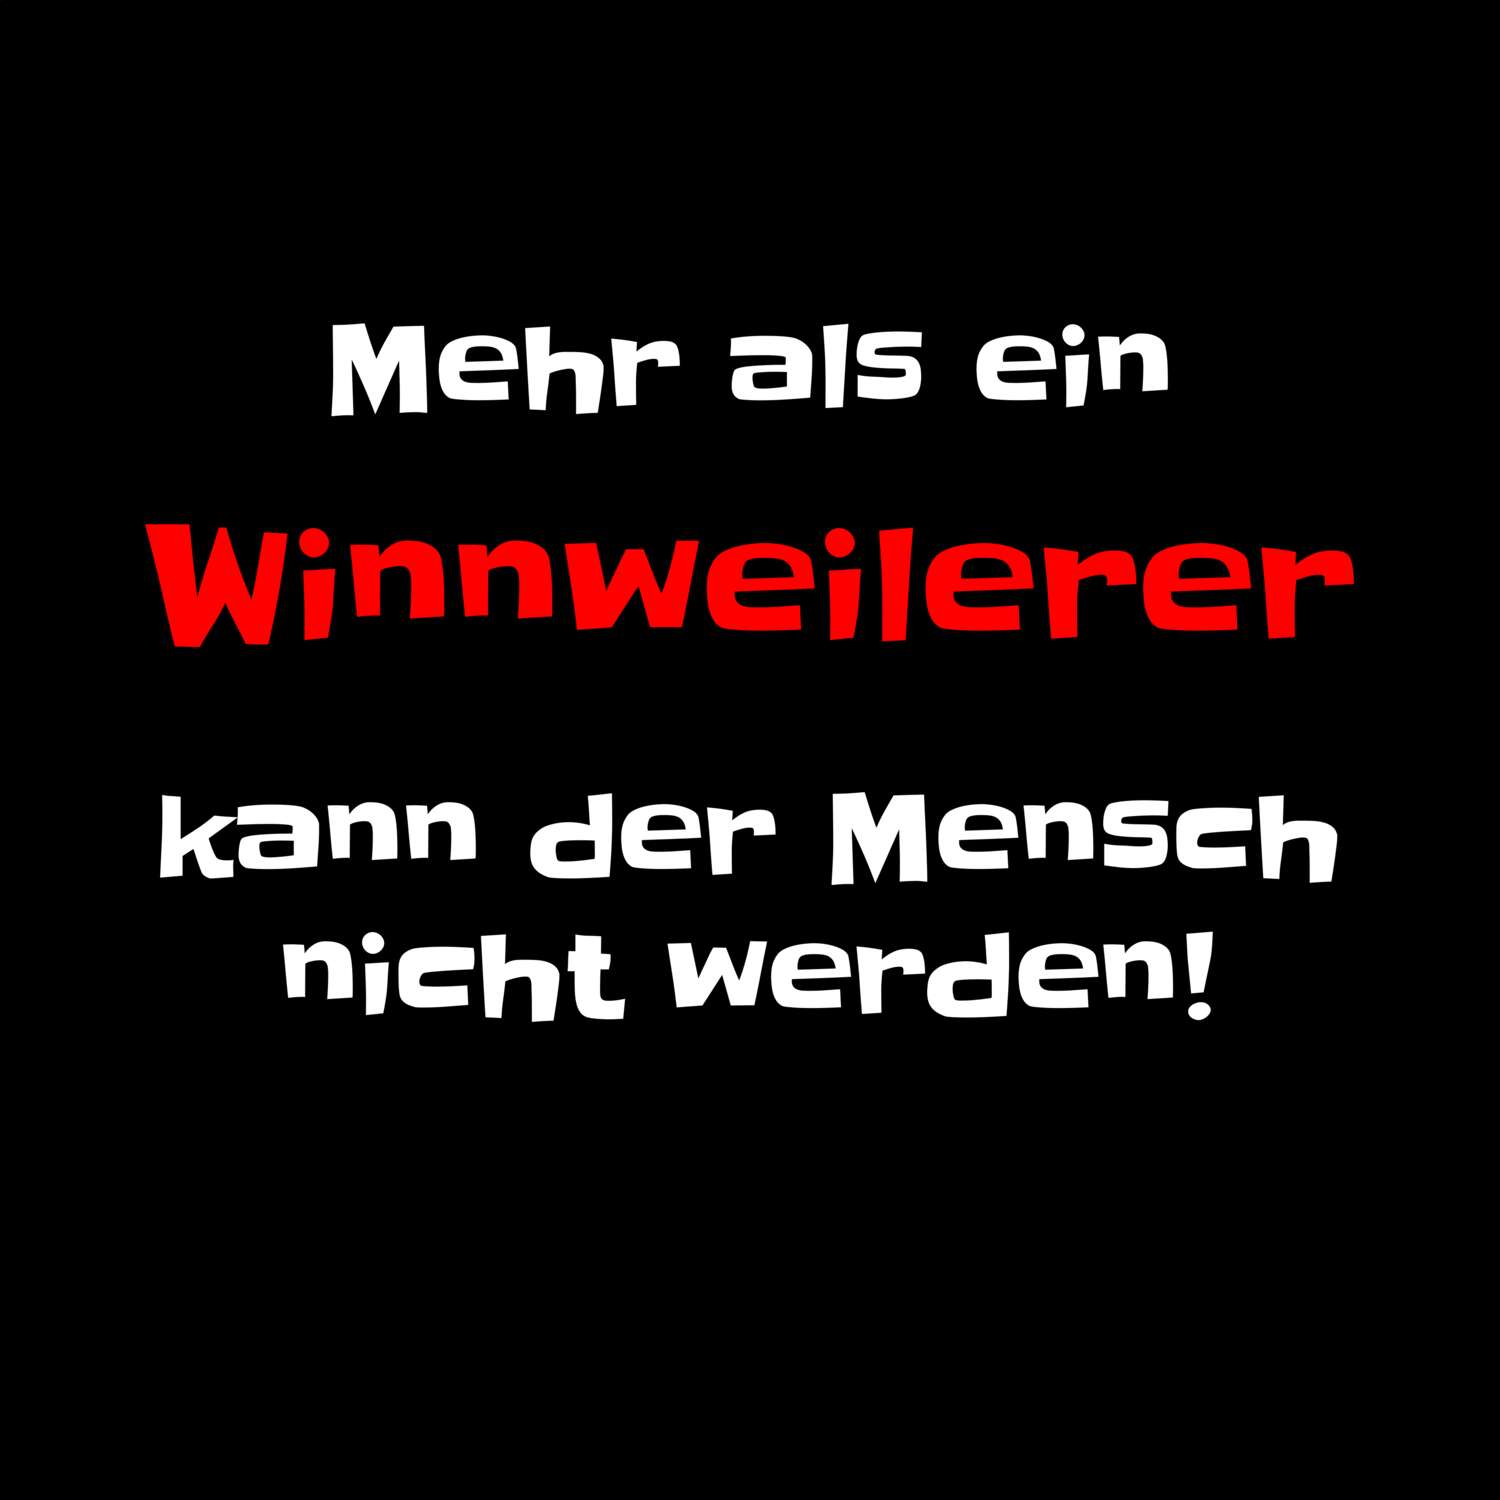 Winnweiler T-Shirt »Mehr als ein«